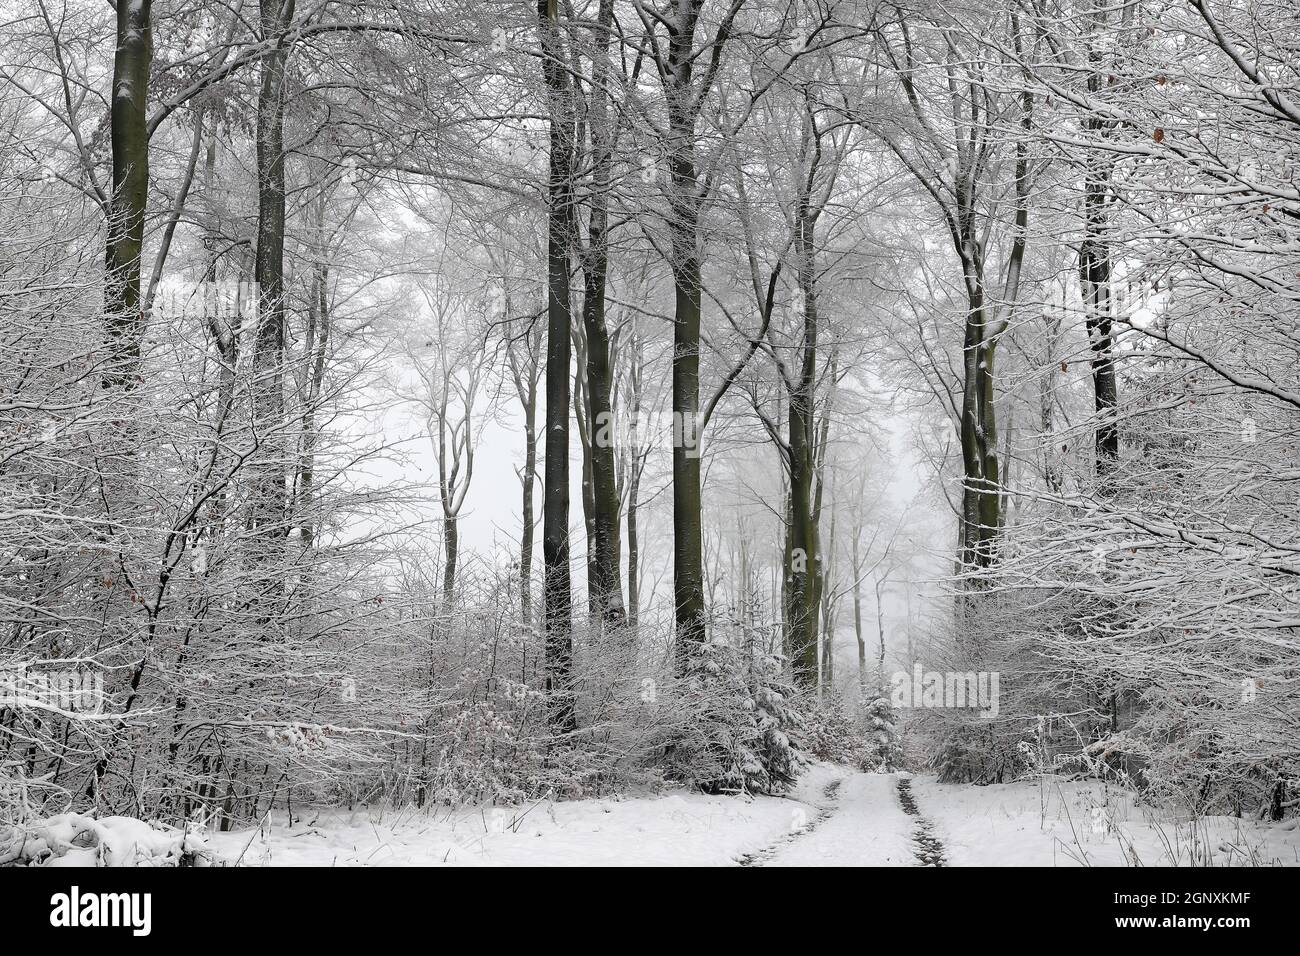 Winterwald im Naturpark Arnsberger Wald auf dem Stimm Stamm,  zugeschneiter Winterwald mit tief hängenden verschneiten Ästen und Zweigen. Stock Photo